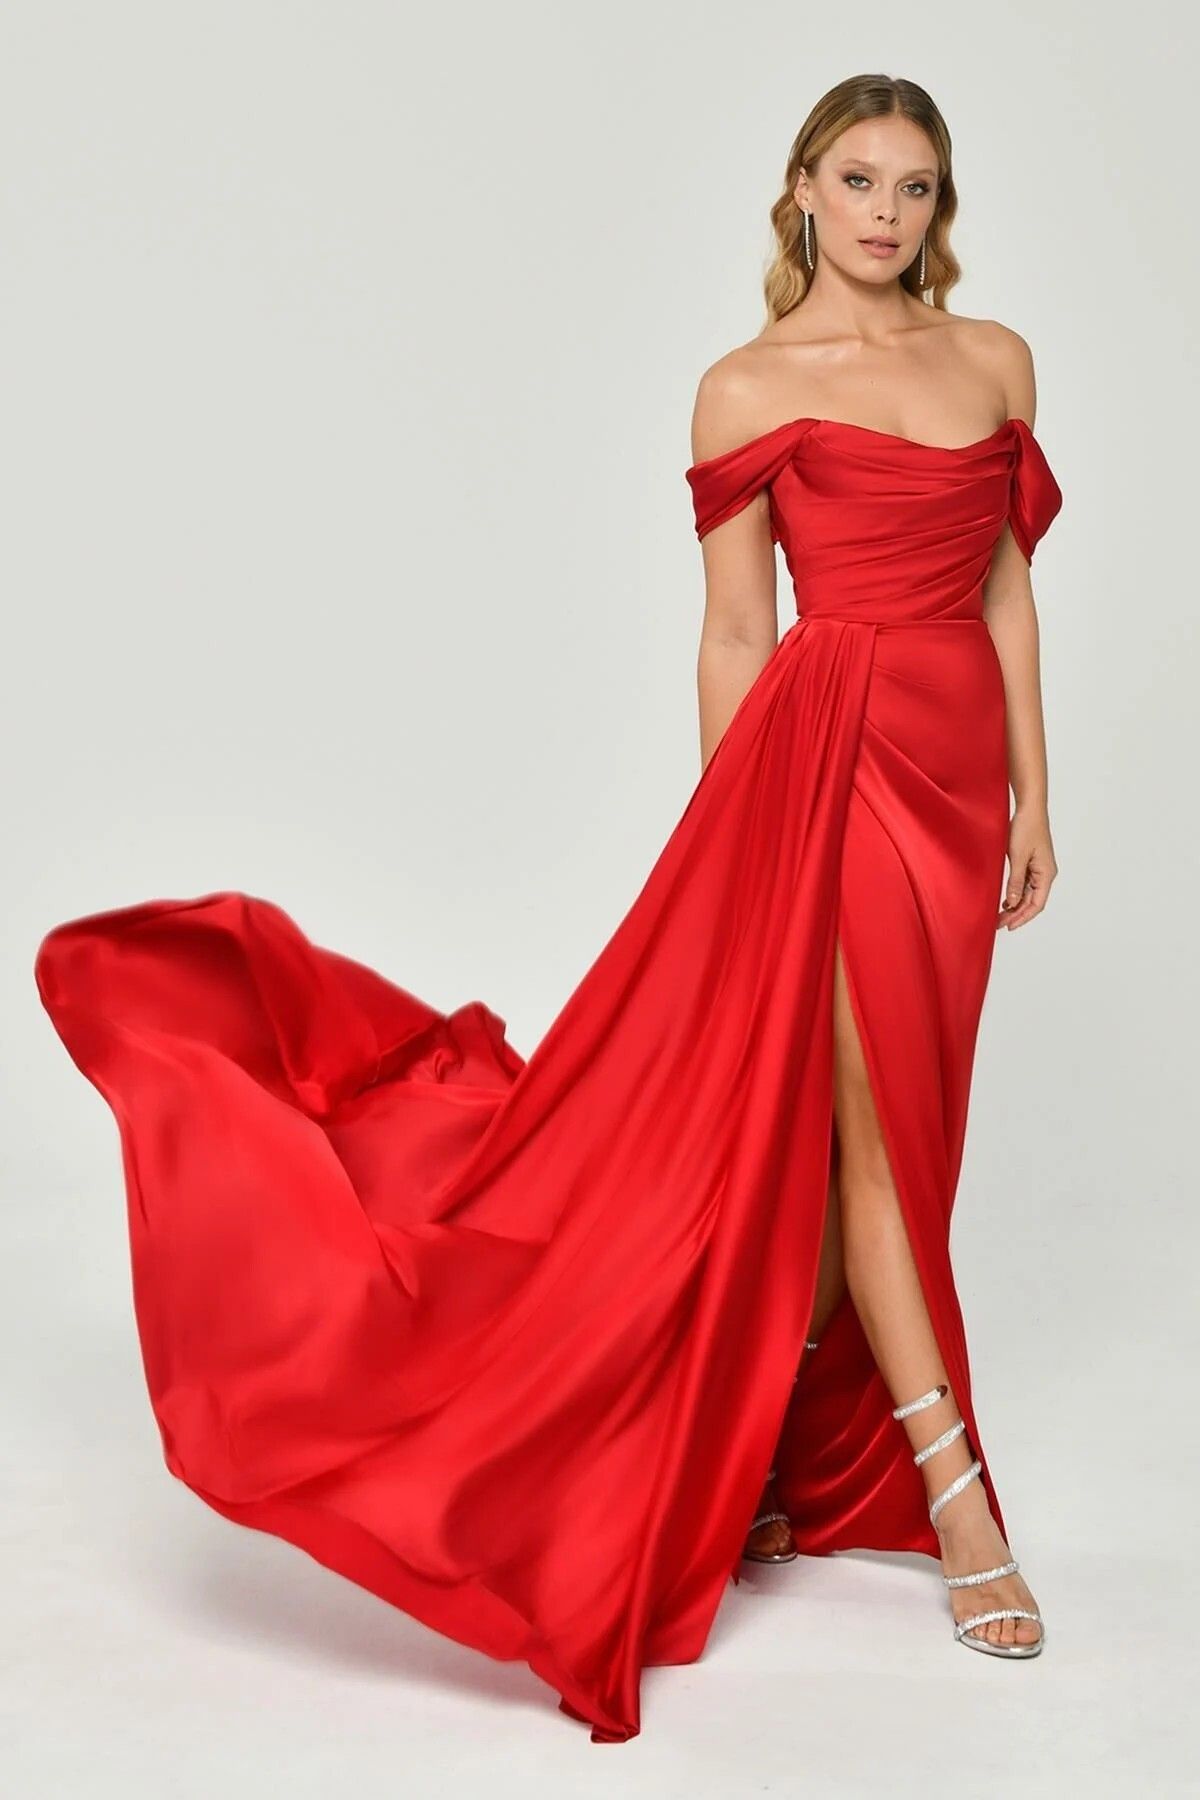 ALFABETA Kadın Düşük Omuz Yandan Yırtmaçlı Saten Uzun Kırmızı Abiye & Mezuniyet Elbisesi Ab5649-kır